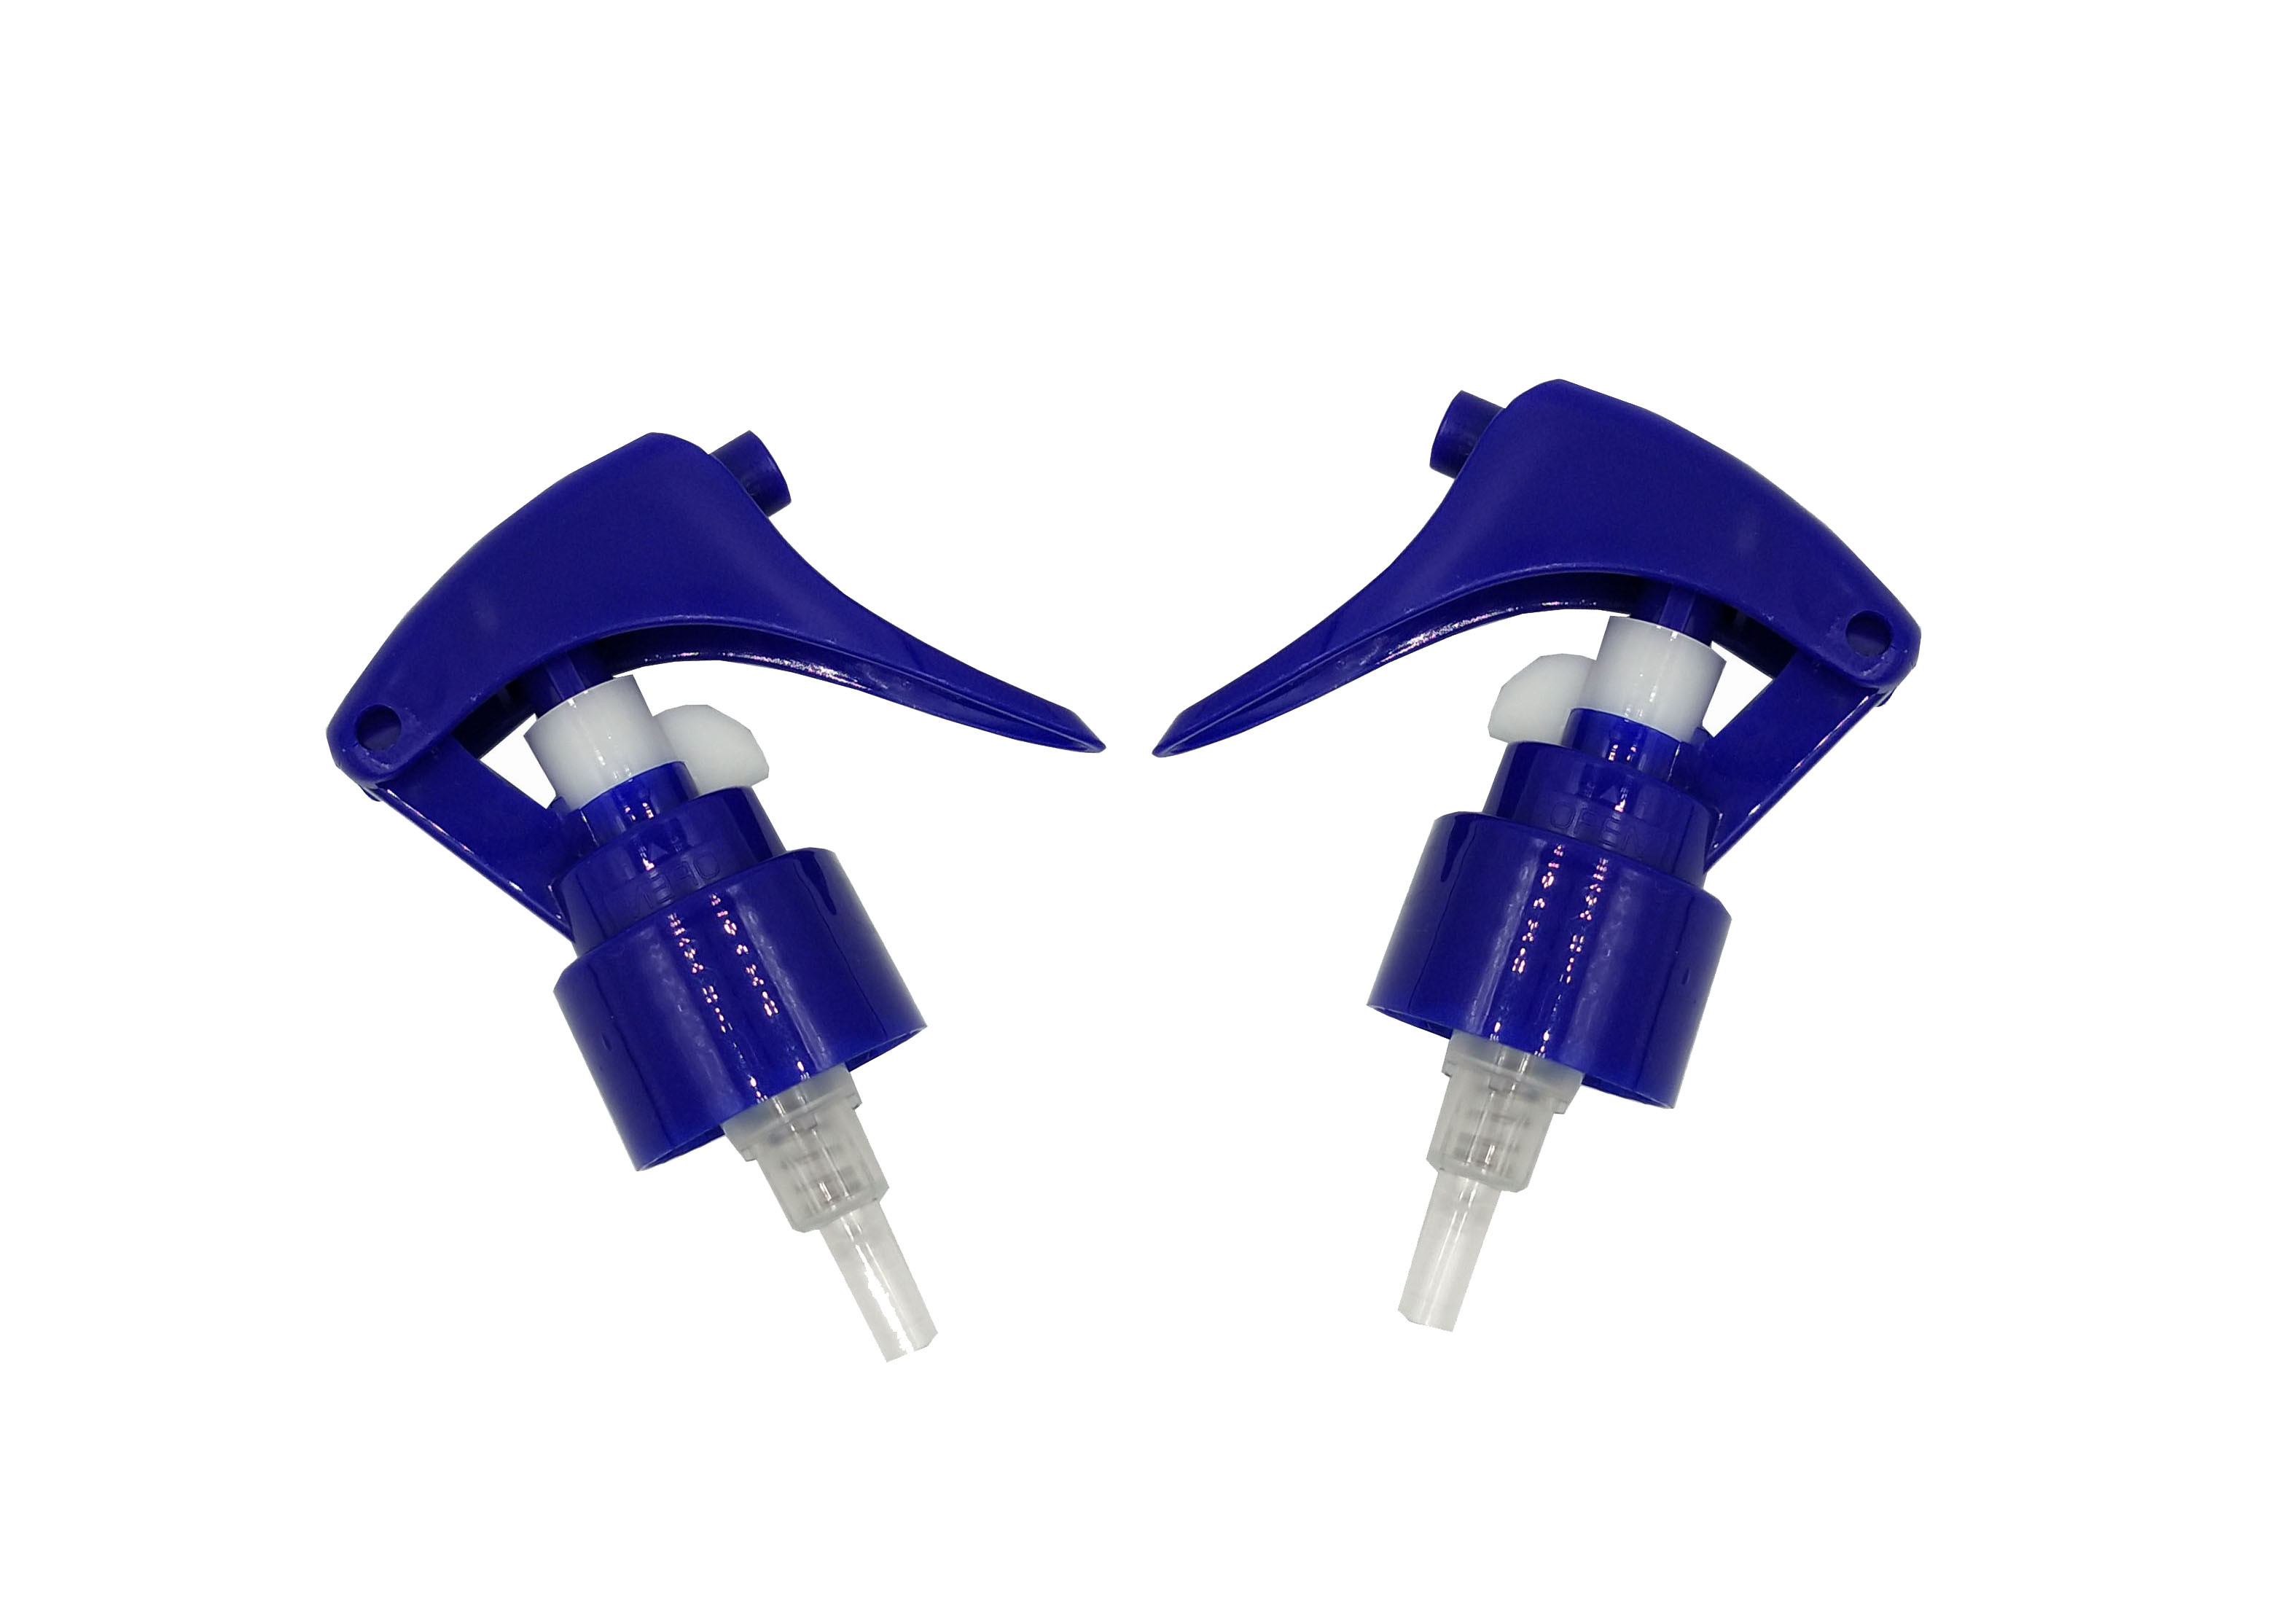 Blue Mini Trigger Sprayer Leakage Proof 24mm 28mm Inner Diameter